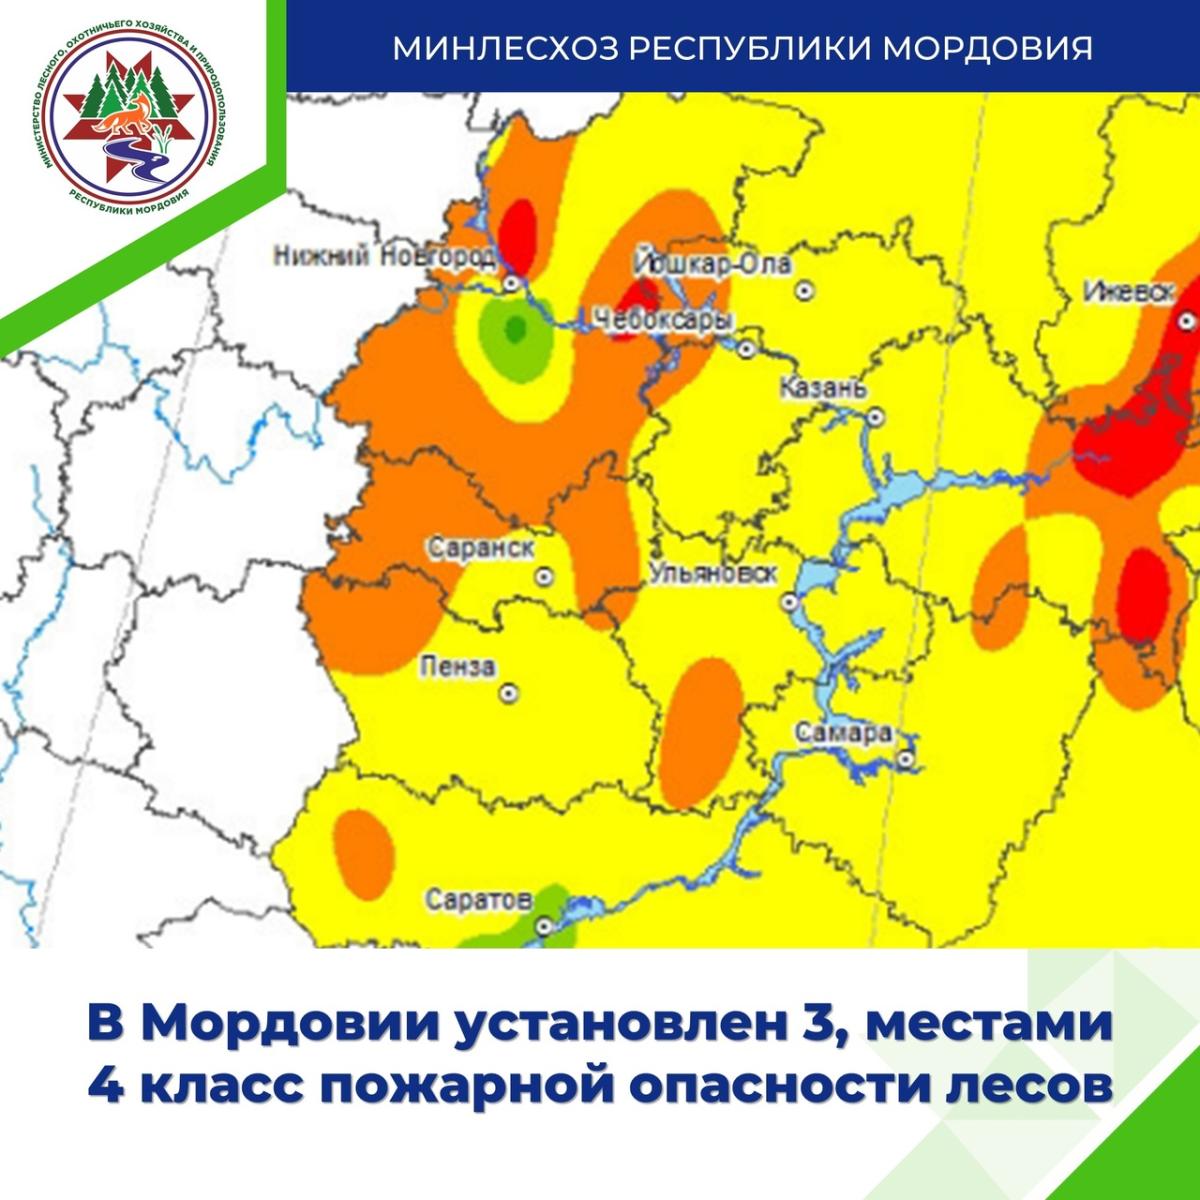 В Мордовии – высокий класс пожарной опасности лесов 